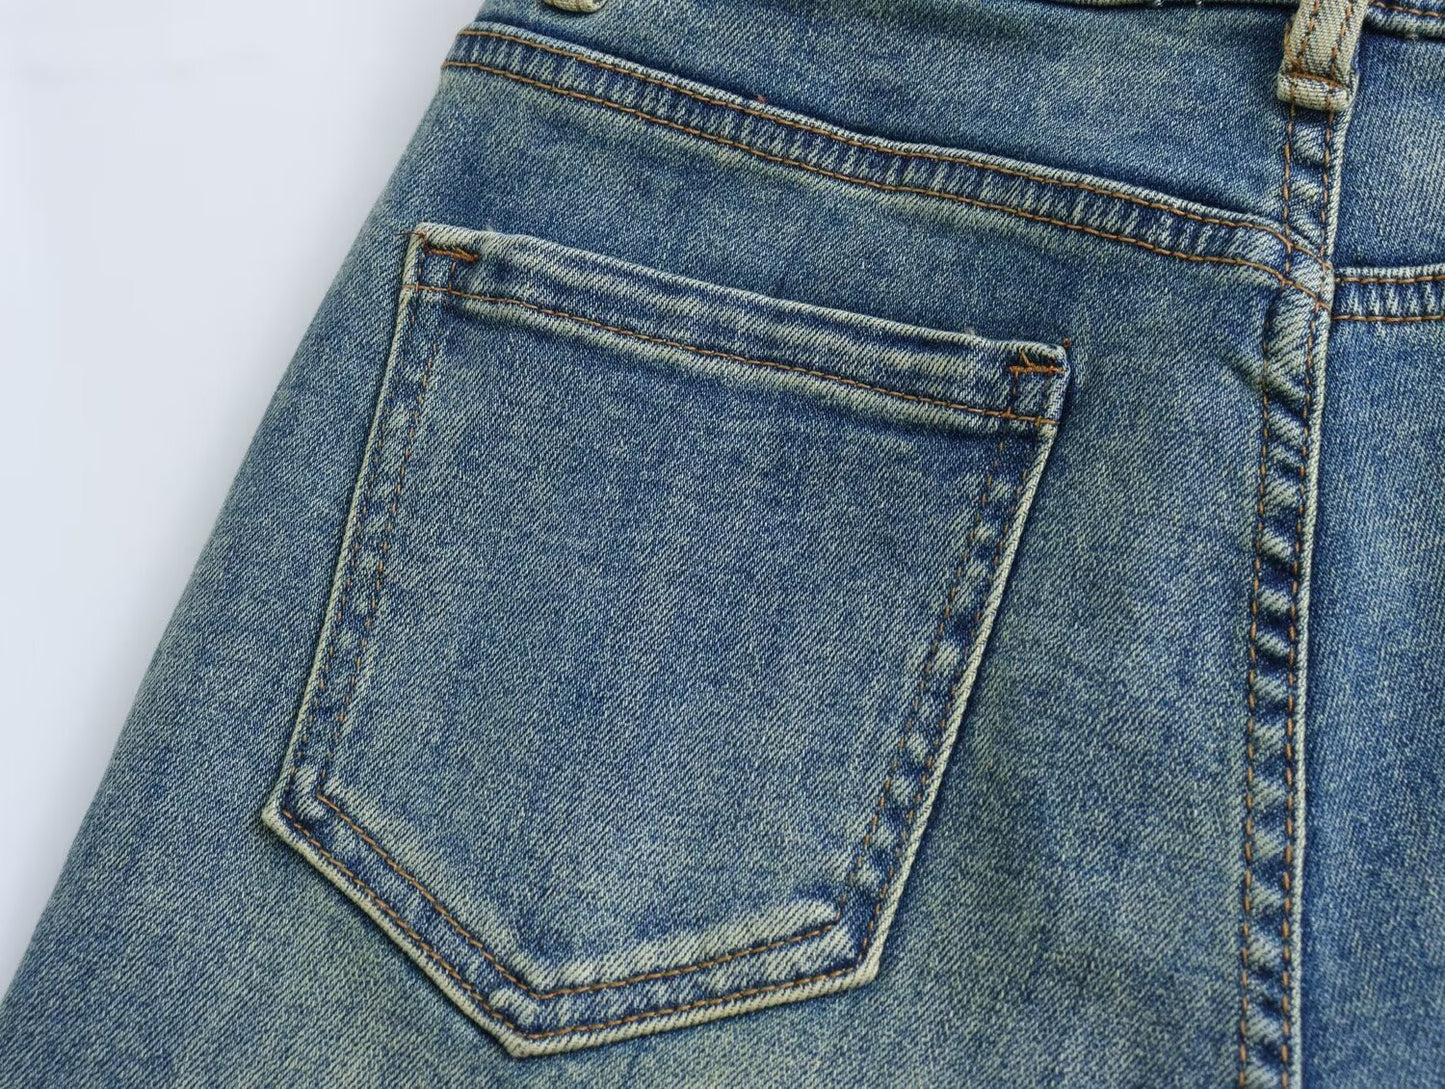 Verwaschene Distressed-Tasche, farblich passende, hohe Taille, gerade Jeans für Damen, Schlankheits-Frühlings-Sommer, schmale, weite Mop-Hose